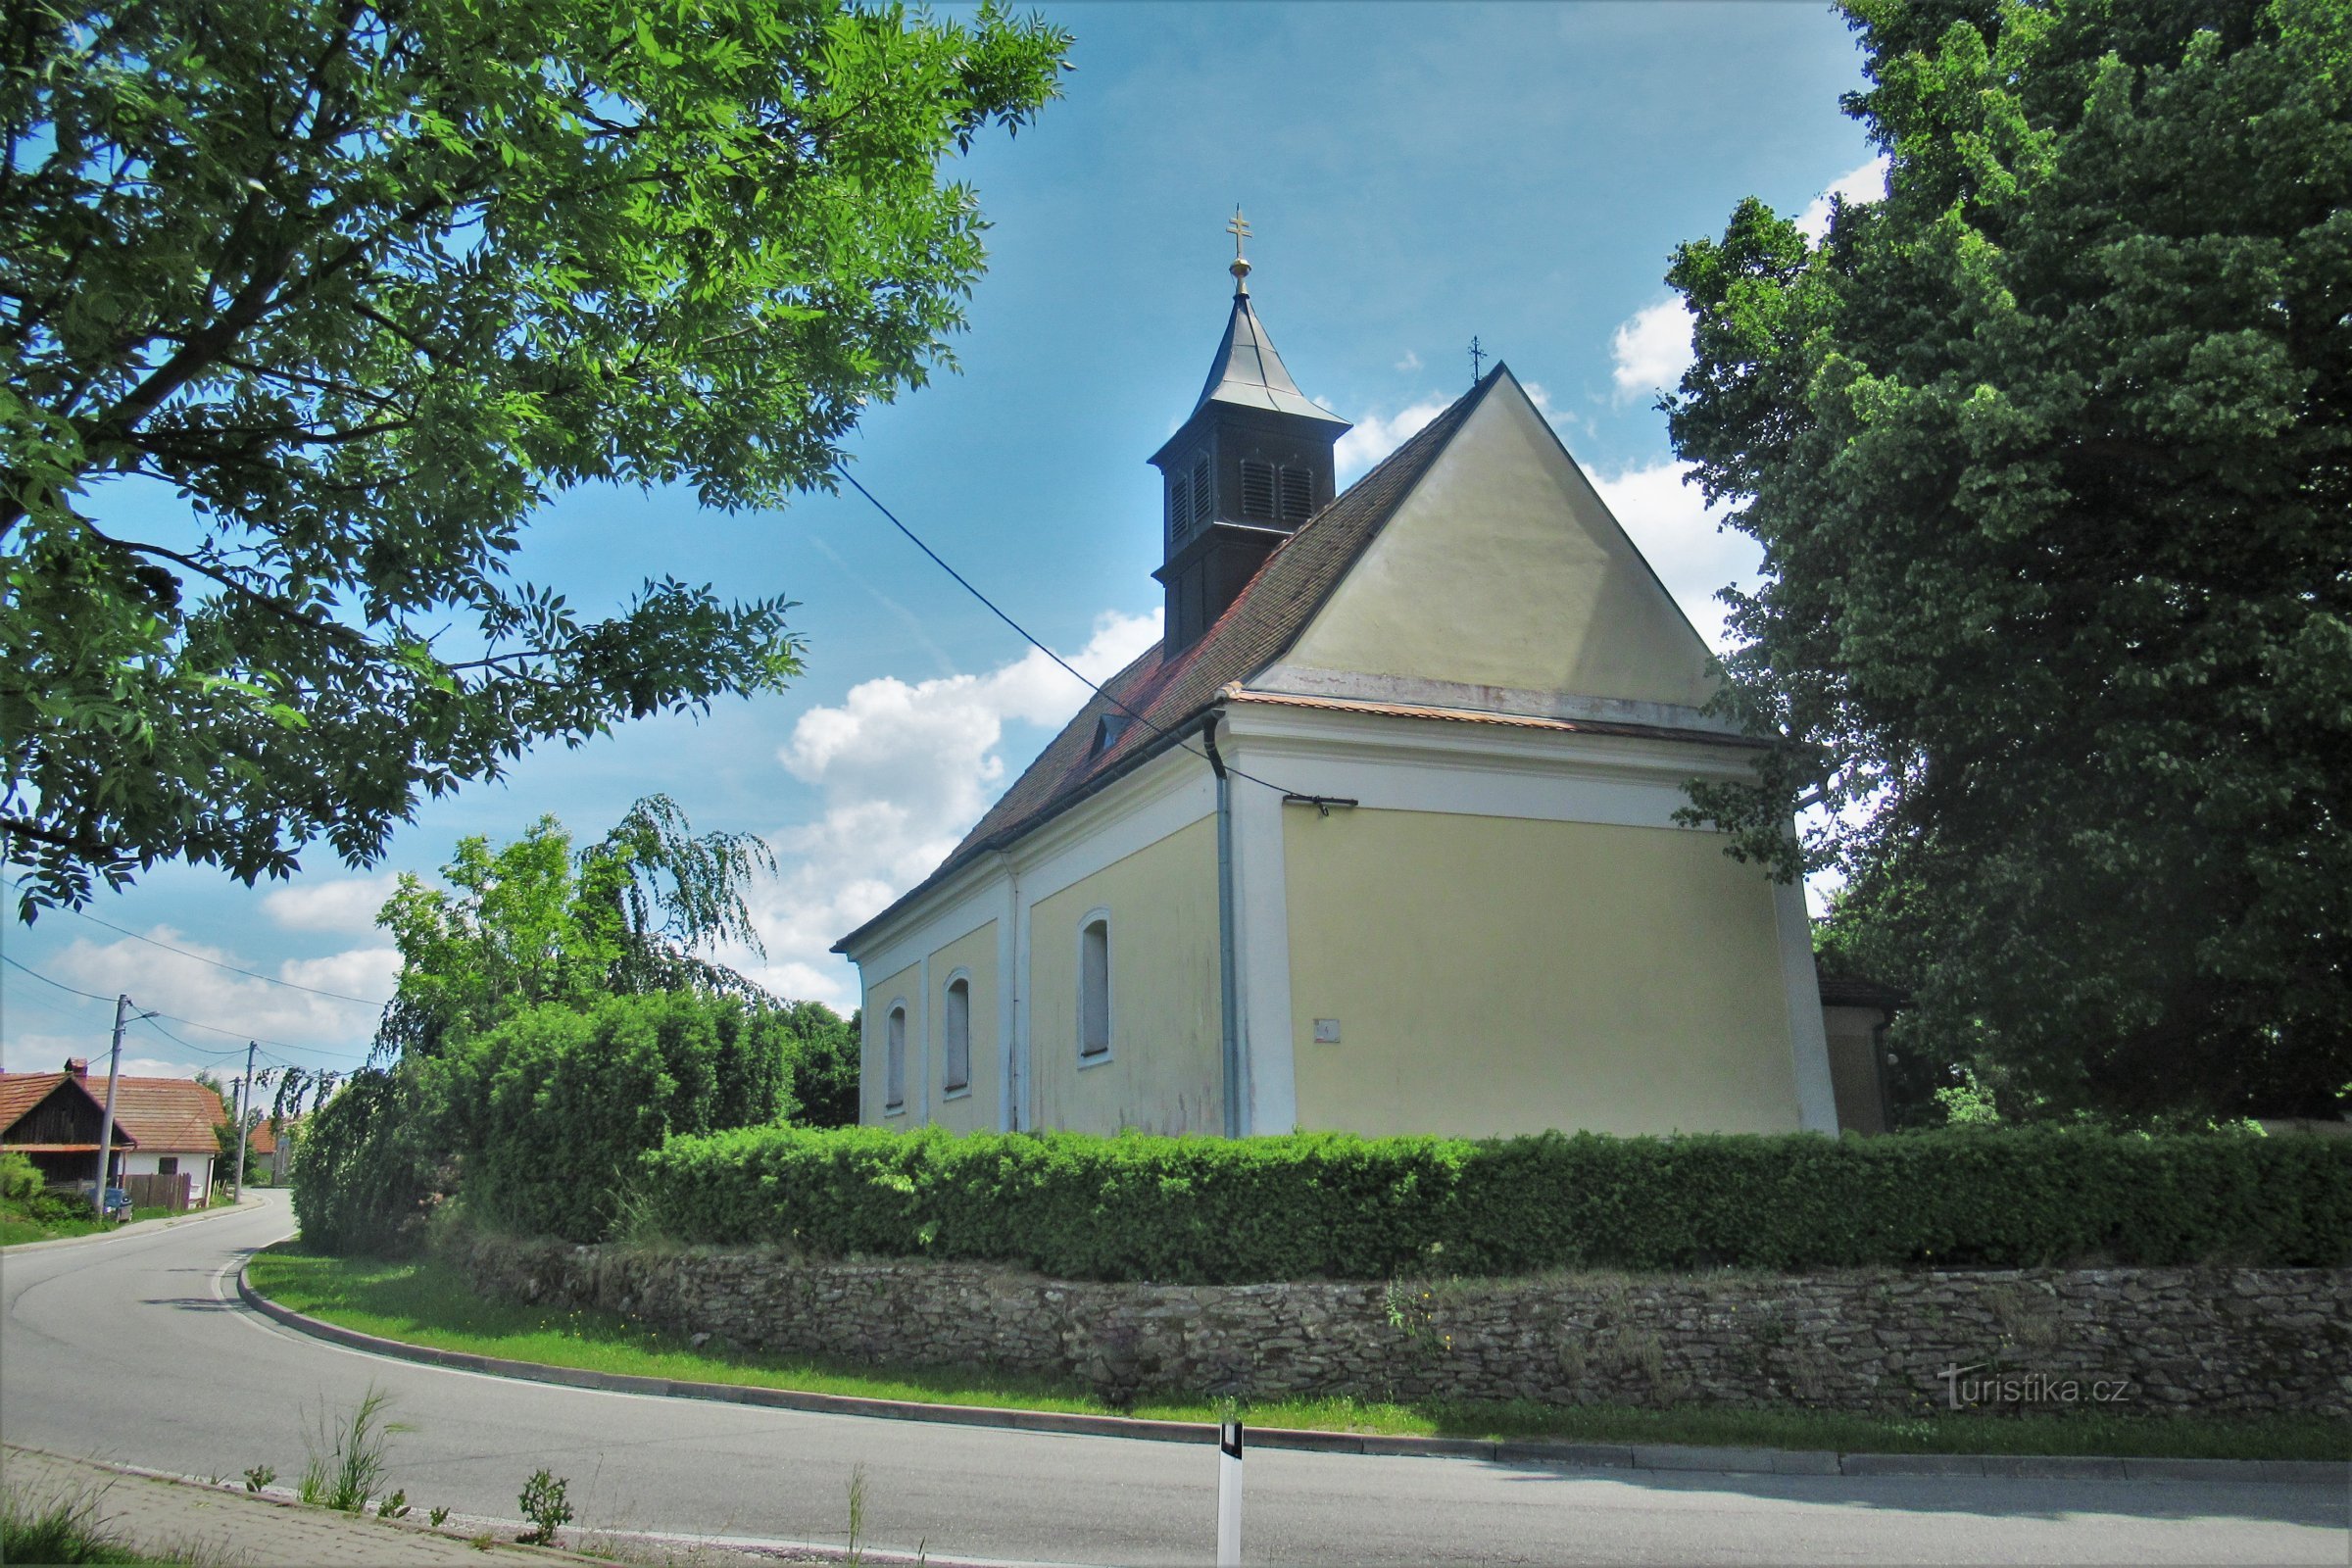 Nemčice - Church of St. Nicholas